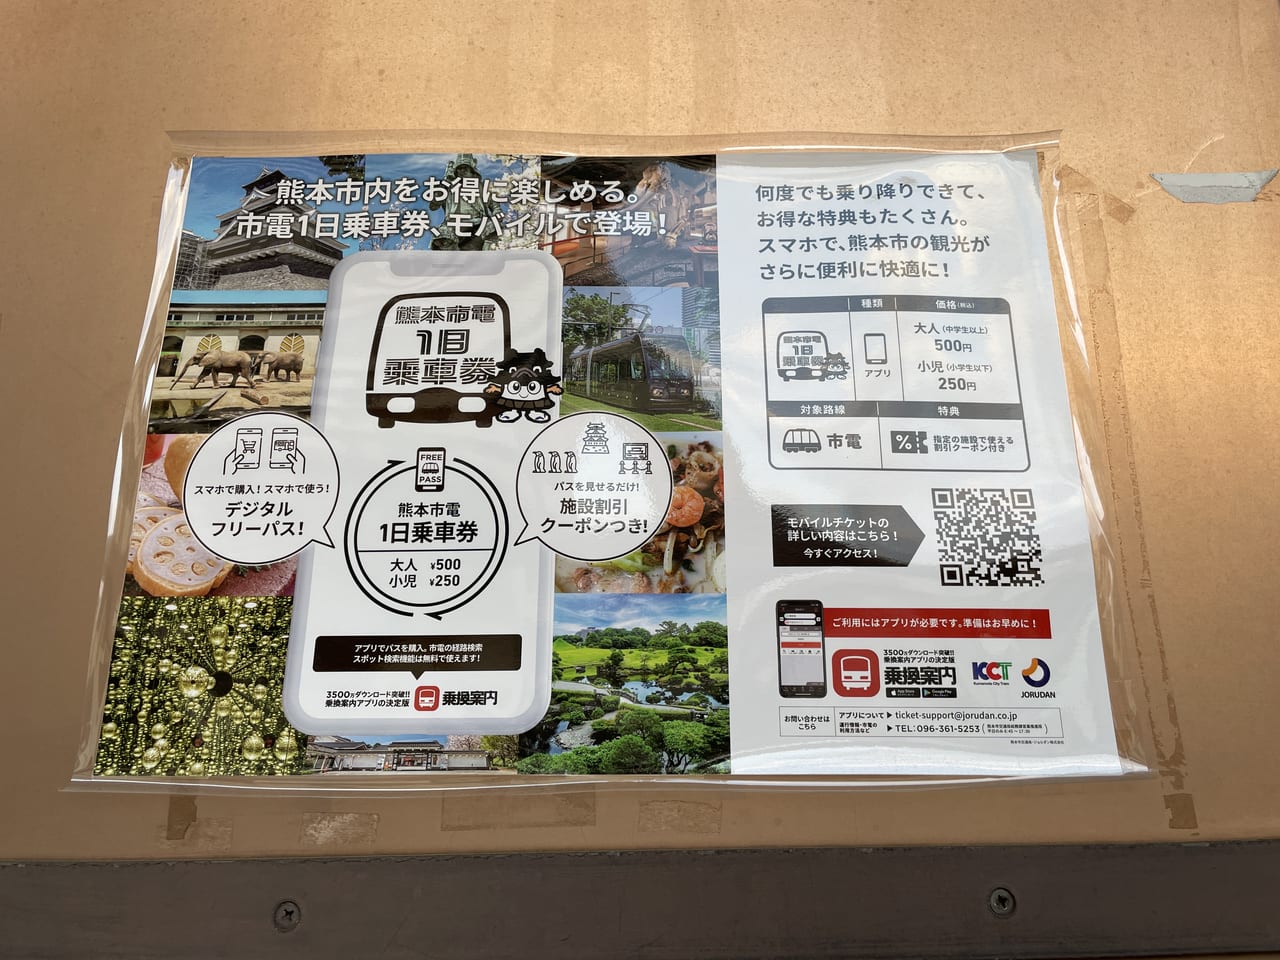 熊本市 デジタルフリーパス 熊本市電１日乗車券のモバイルチケットが発売されています 号外net 熊本市中央区 東区